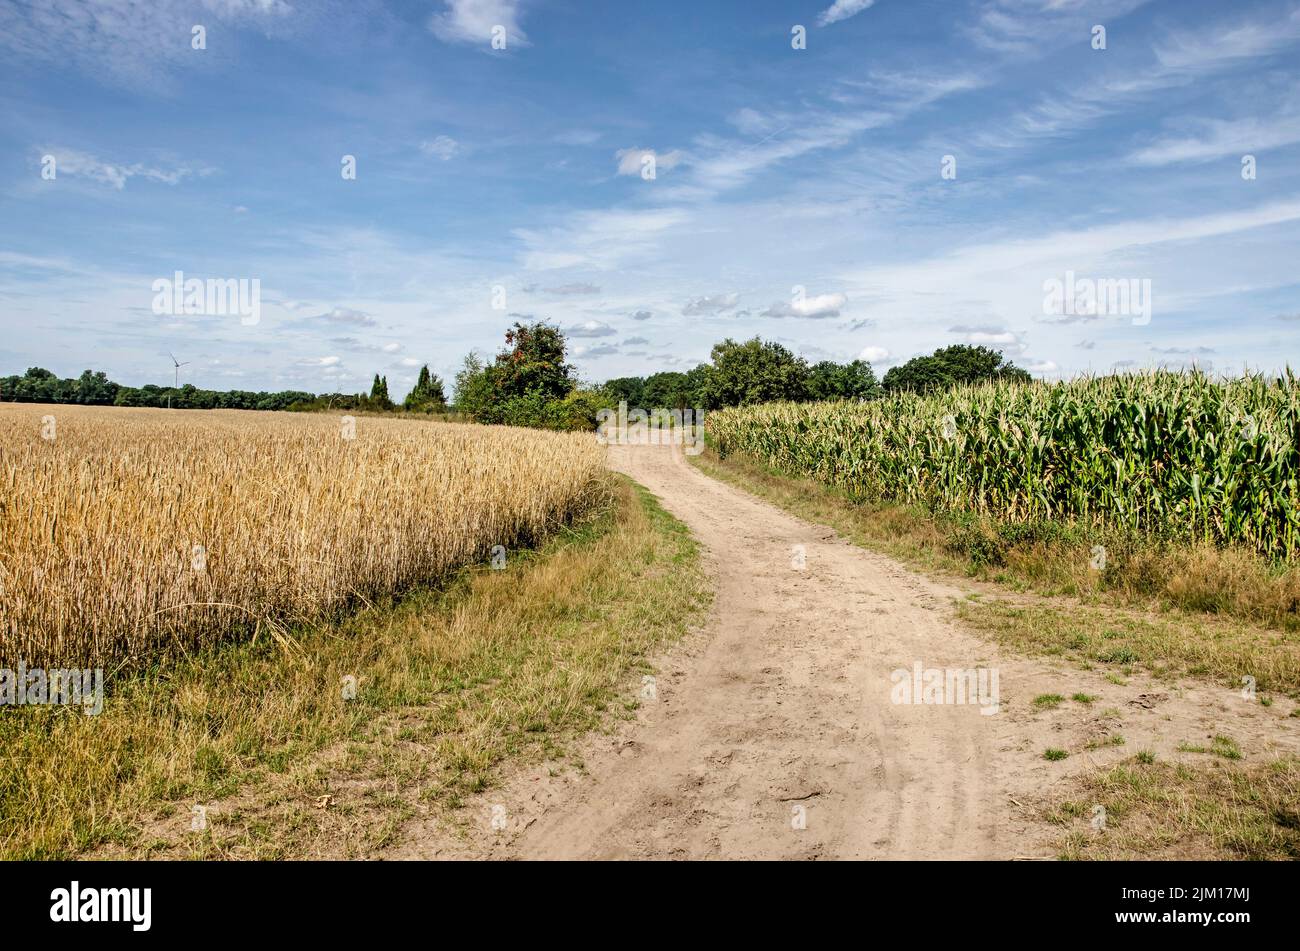 Route de terre sinueuse entre un champ de maïs et un champ de blé près de Münster, en Allemagne, un jour ensoleillé en été Banque D'Images